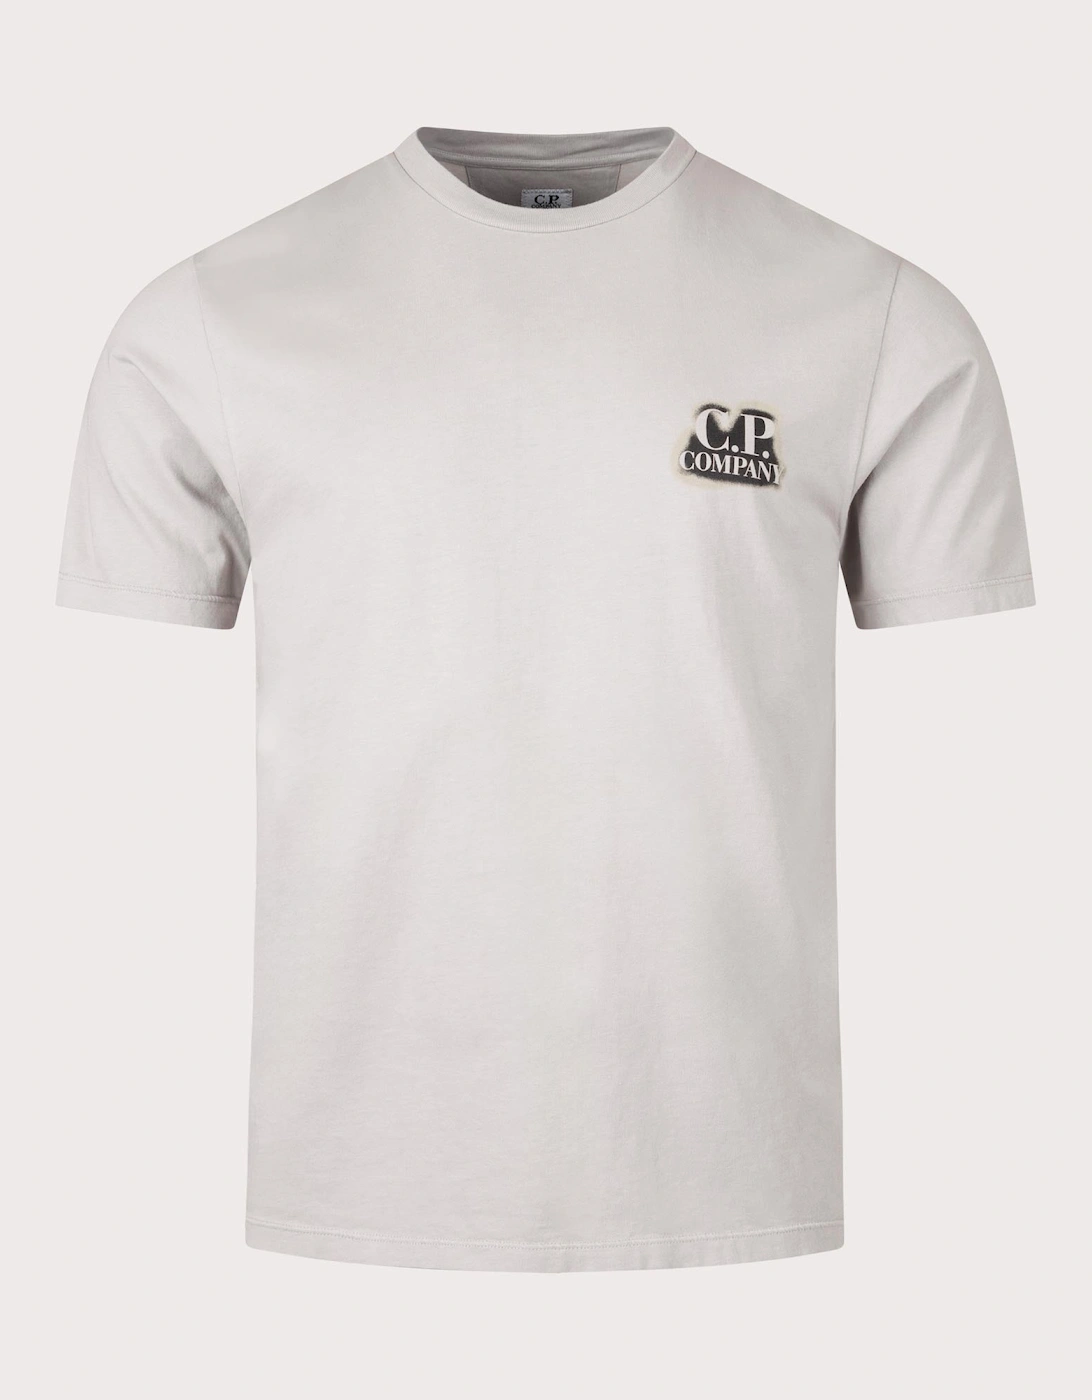 24/1 Jersey Artisinal British Sailor T-Shirt